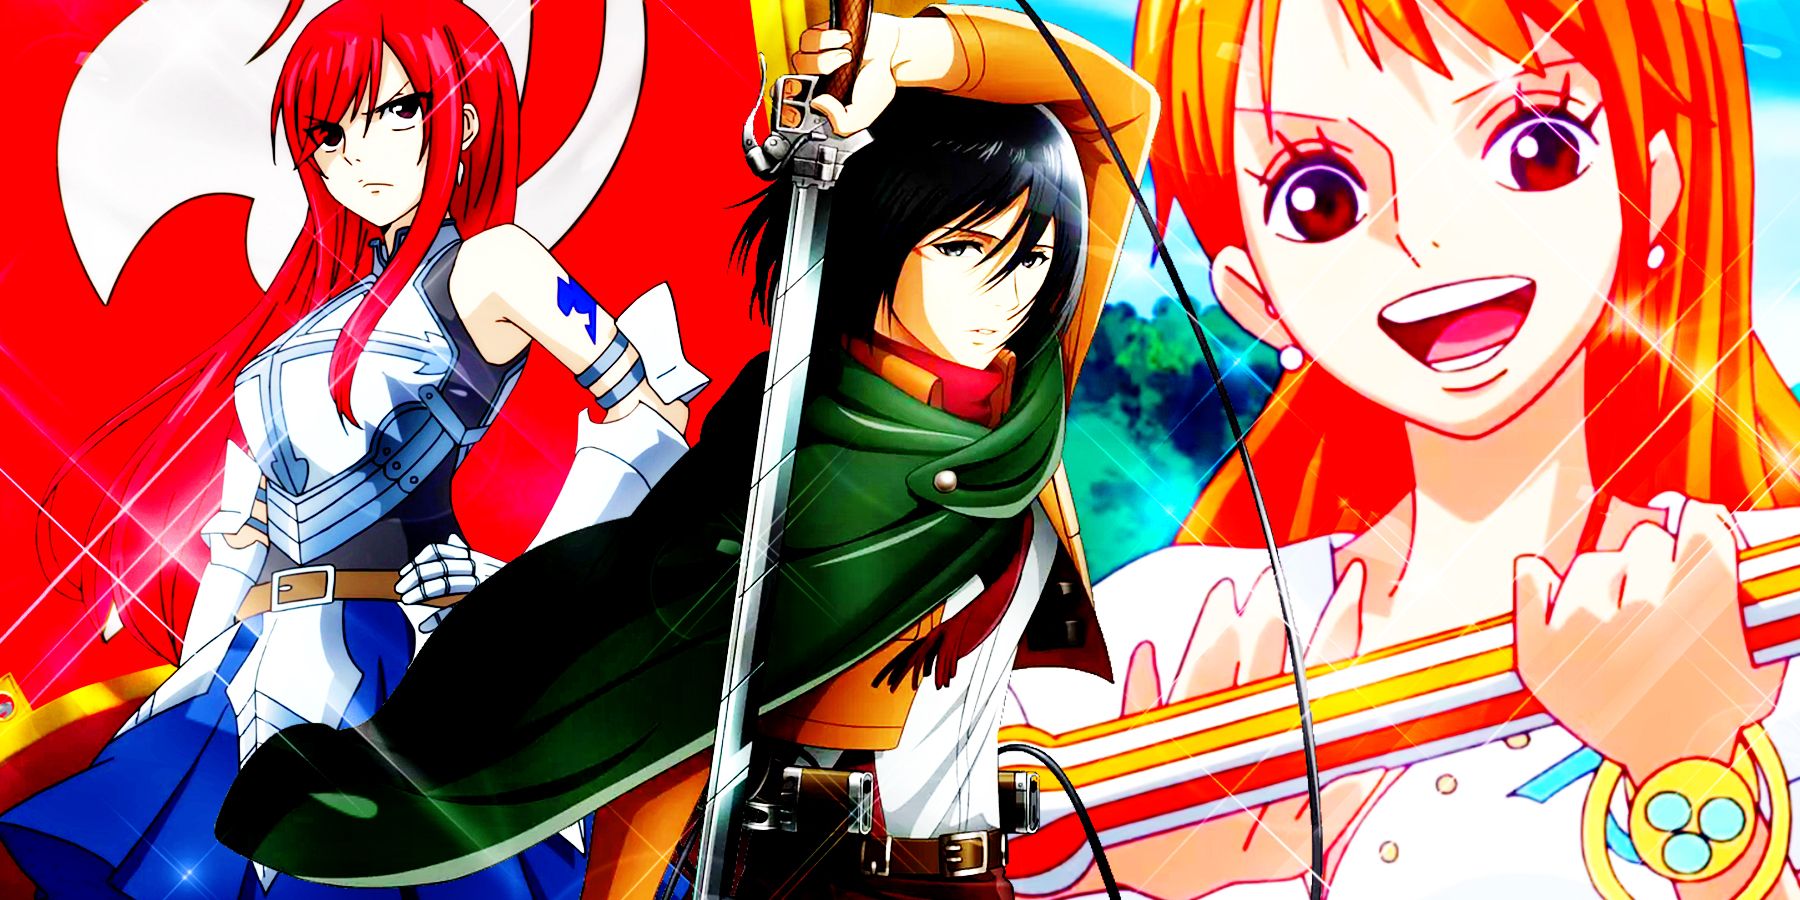 Urutan Nonton My Hero Academia Anime Shounen Super Power-demhanvico.com.vn